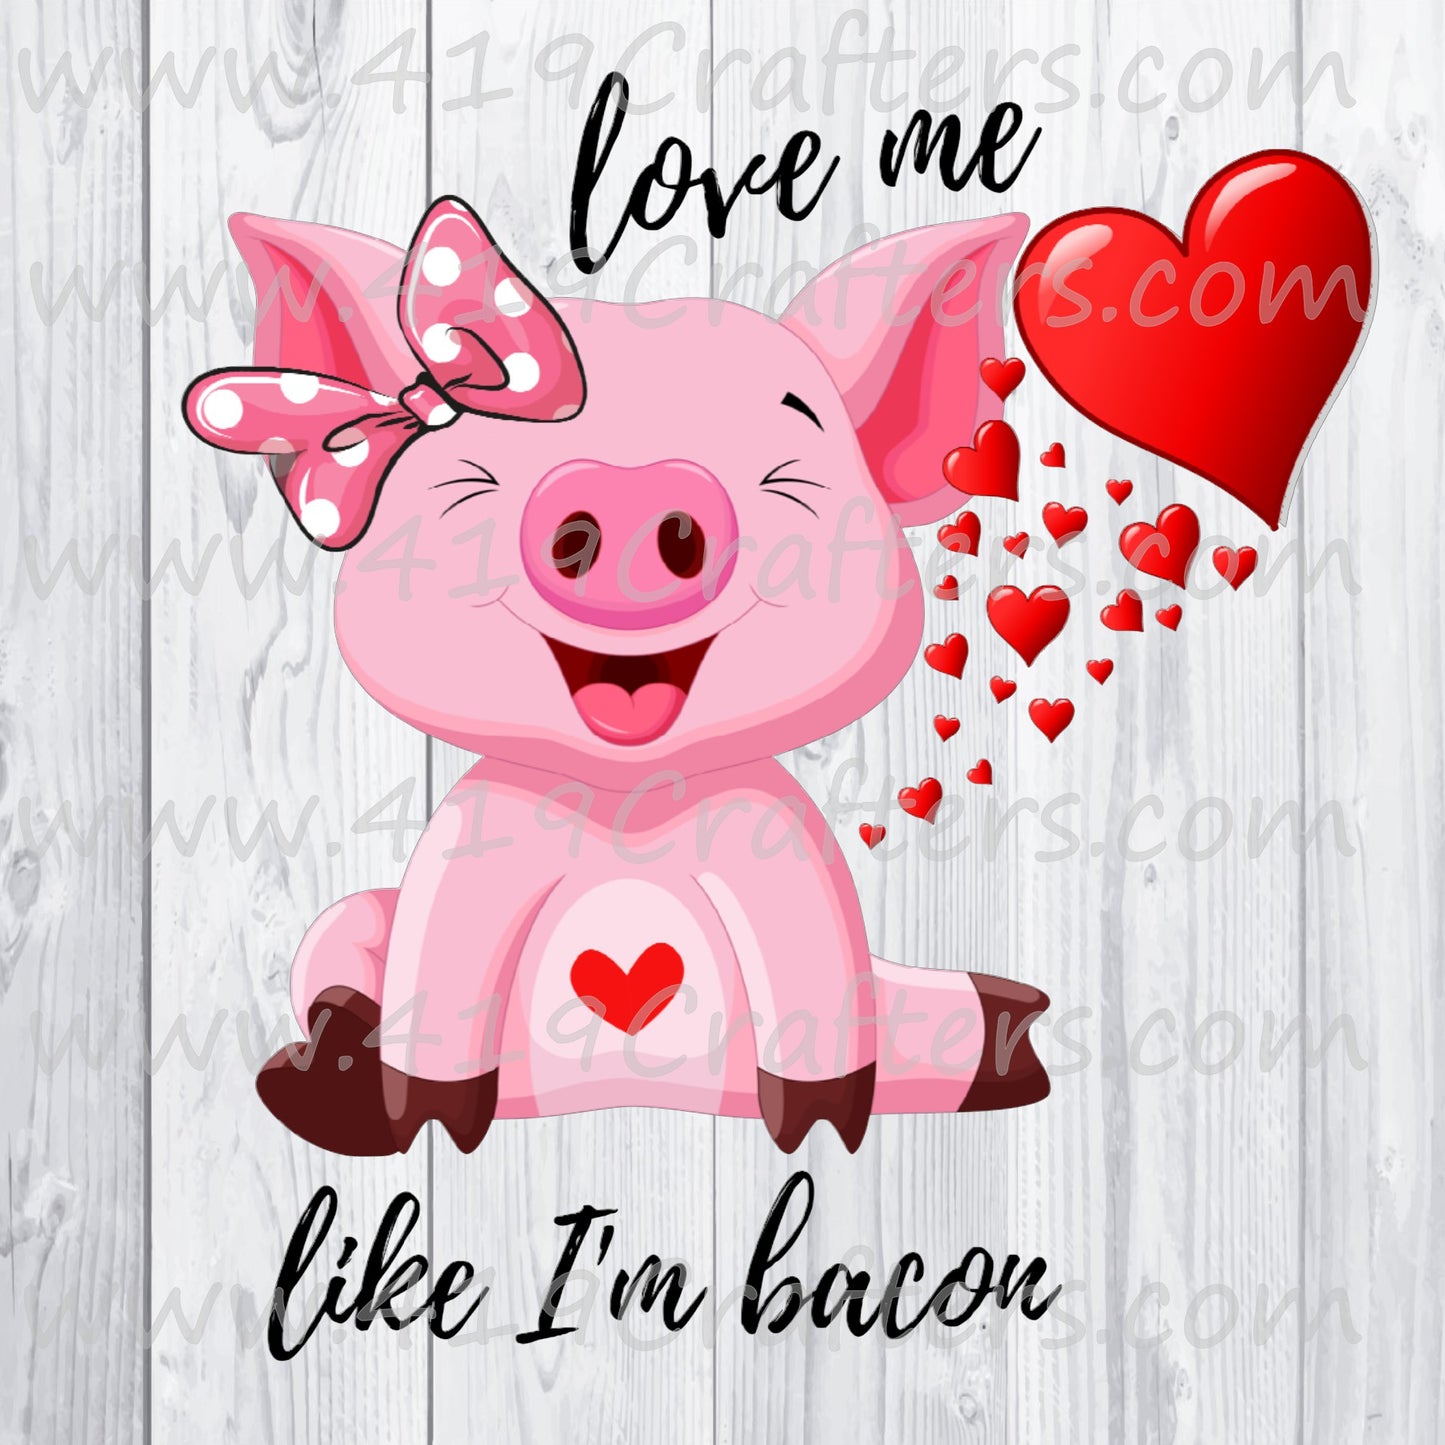 LOVE ME LIKE I AM BACON